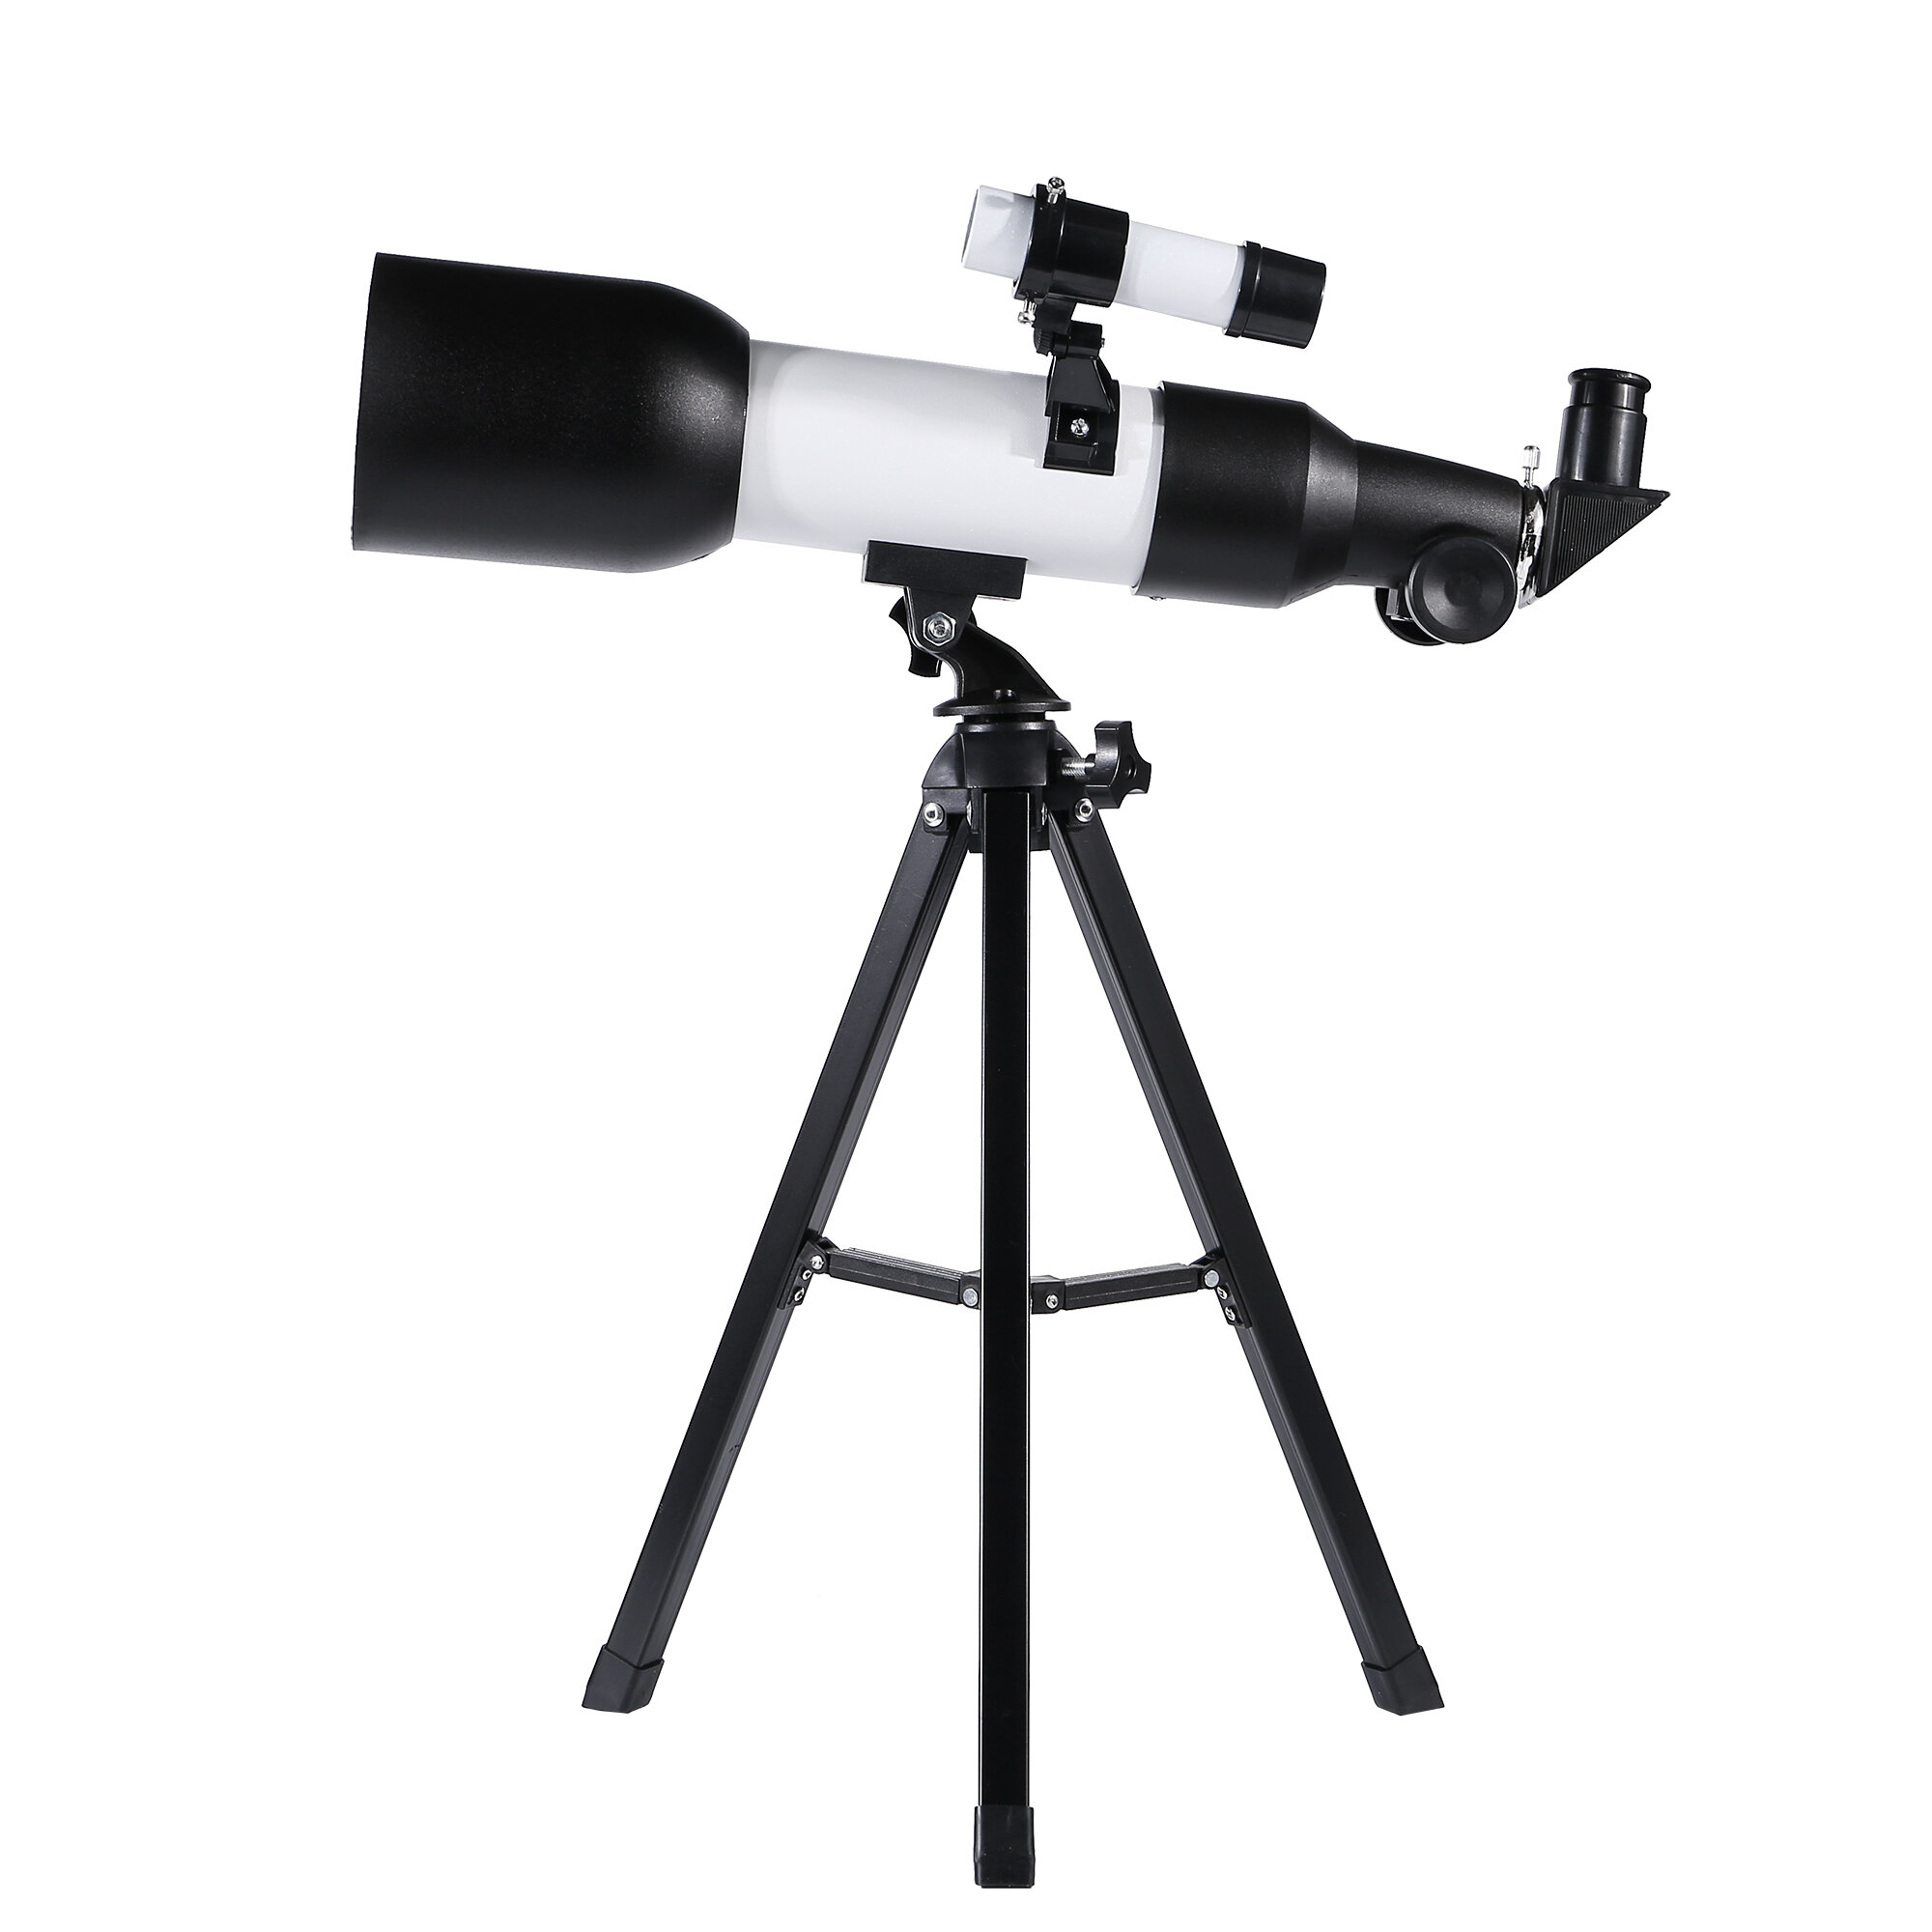 Teleskop astronomiczny profesjonalny HD Eyebre 120x dla dzieci z widzeniem nocnym o niskim poziomie światła i statywem do obserwacji przestrzeni kosmicznej.